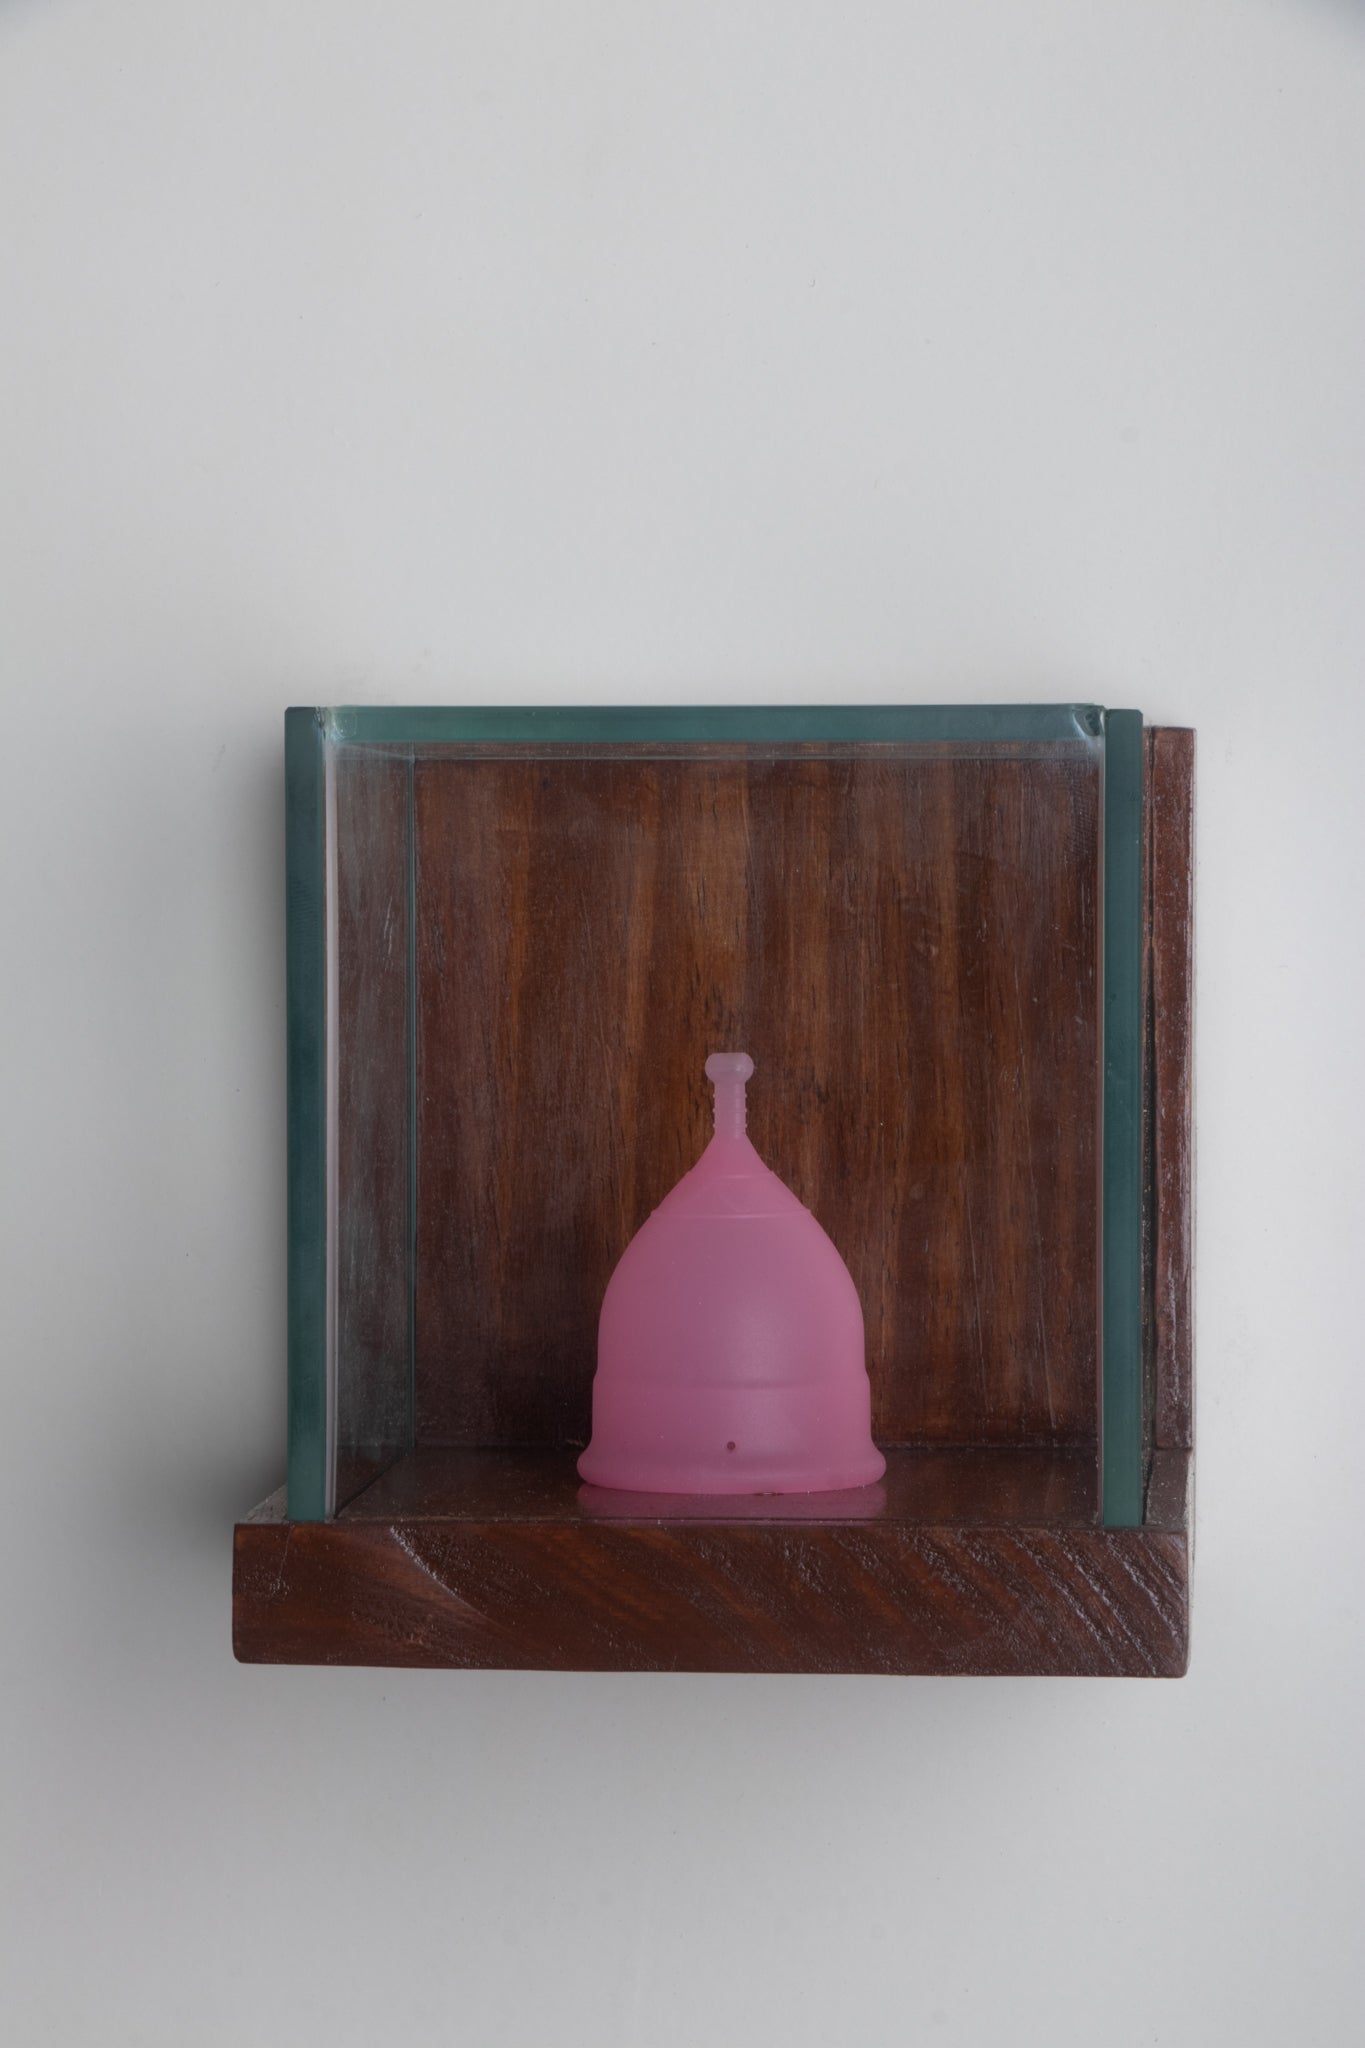 'Collectors Bell' by Saviya Lopes